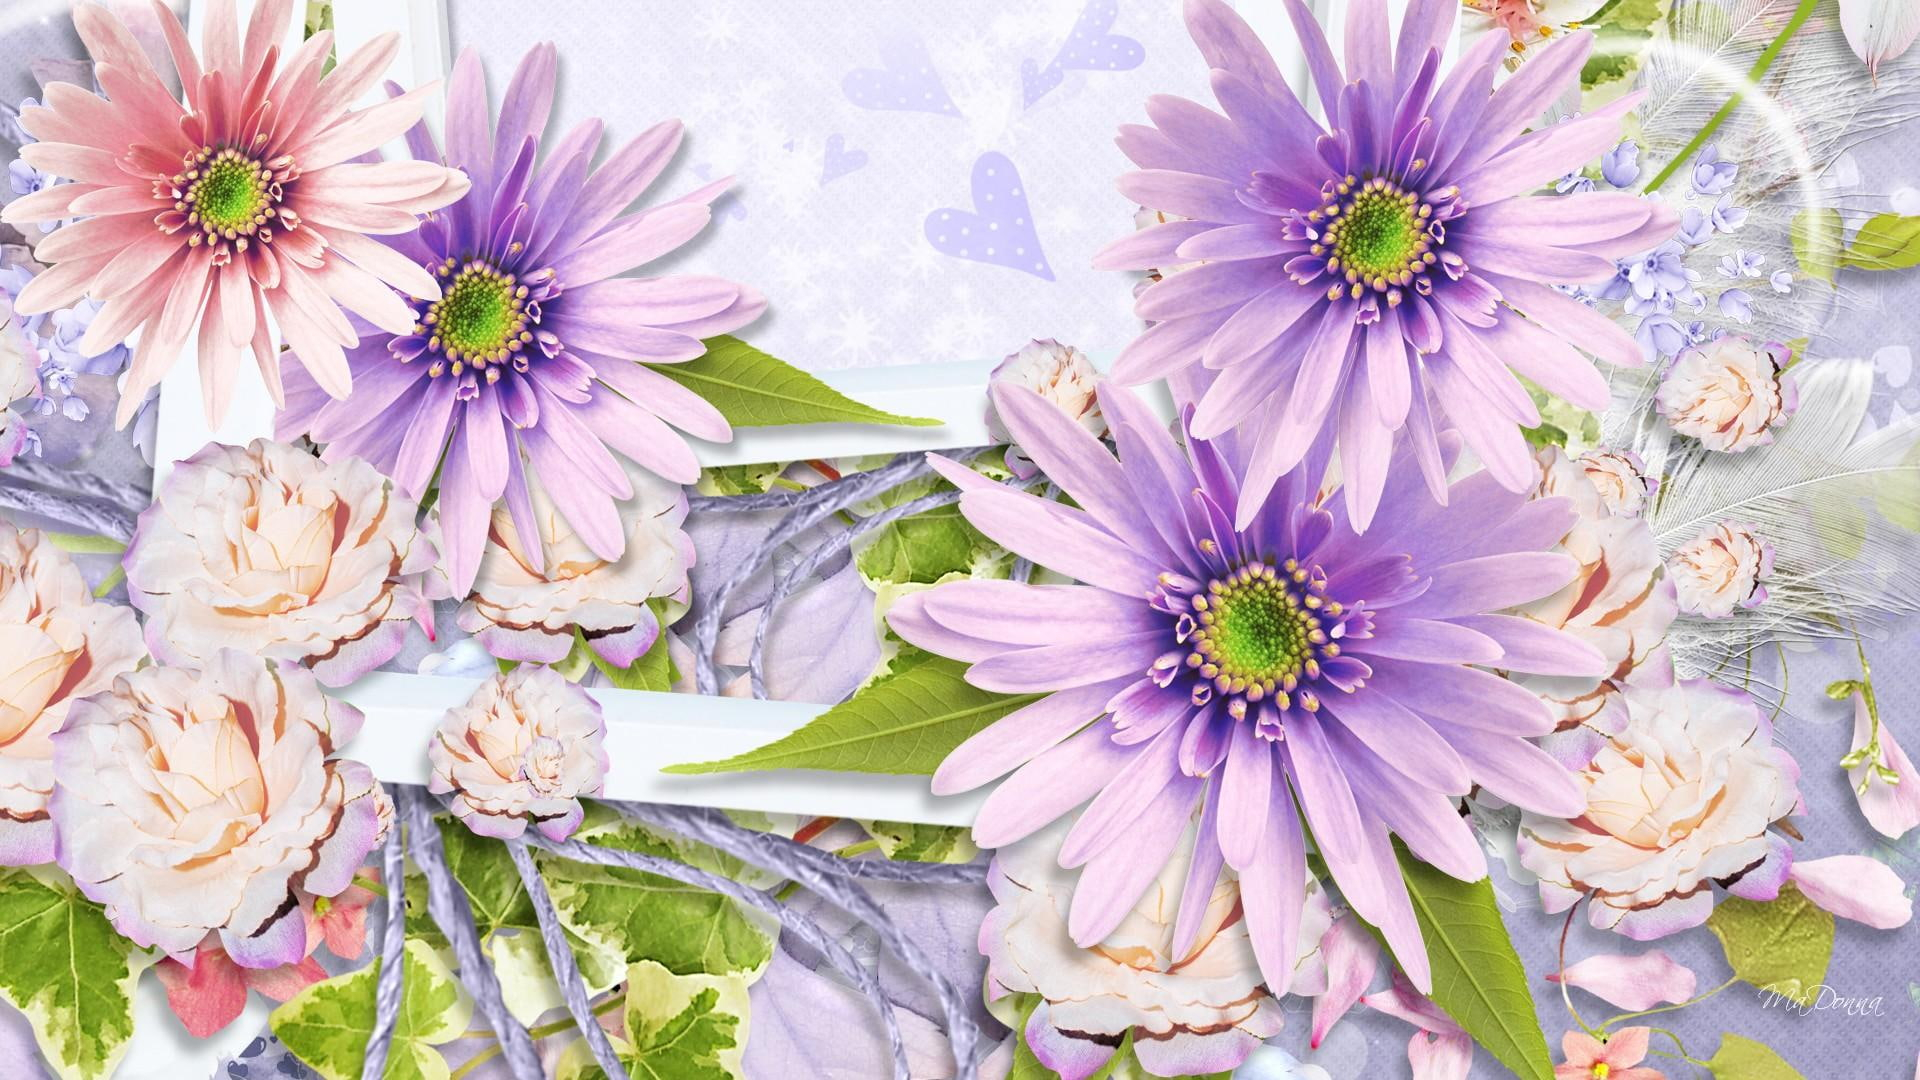 Spring Floral Display wallpaper, soft, pink roses, flower, lavender, hearts